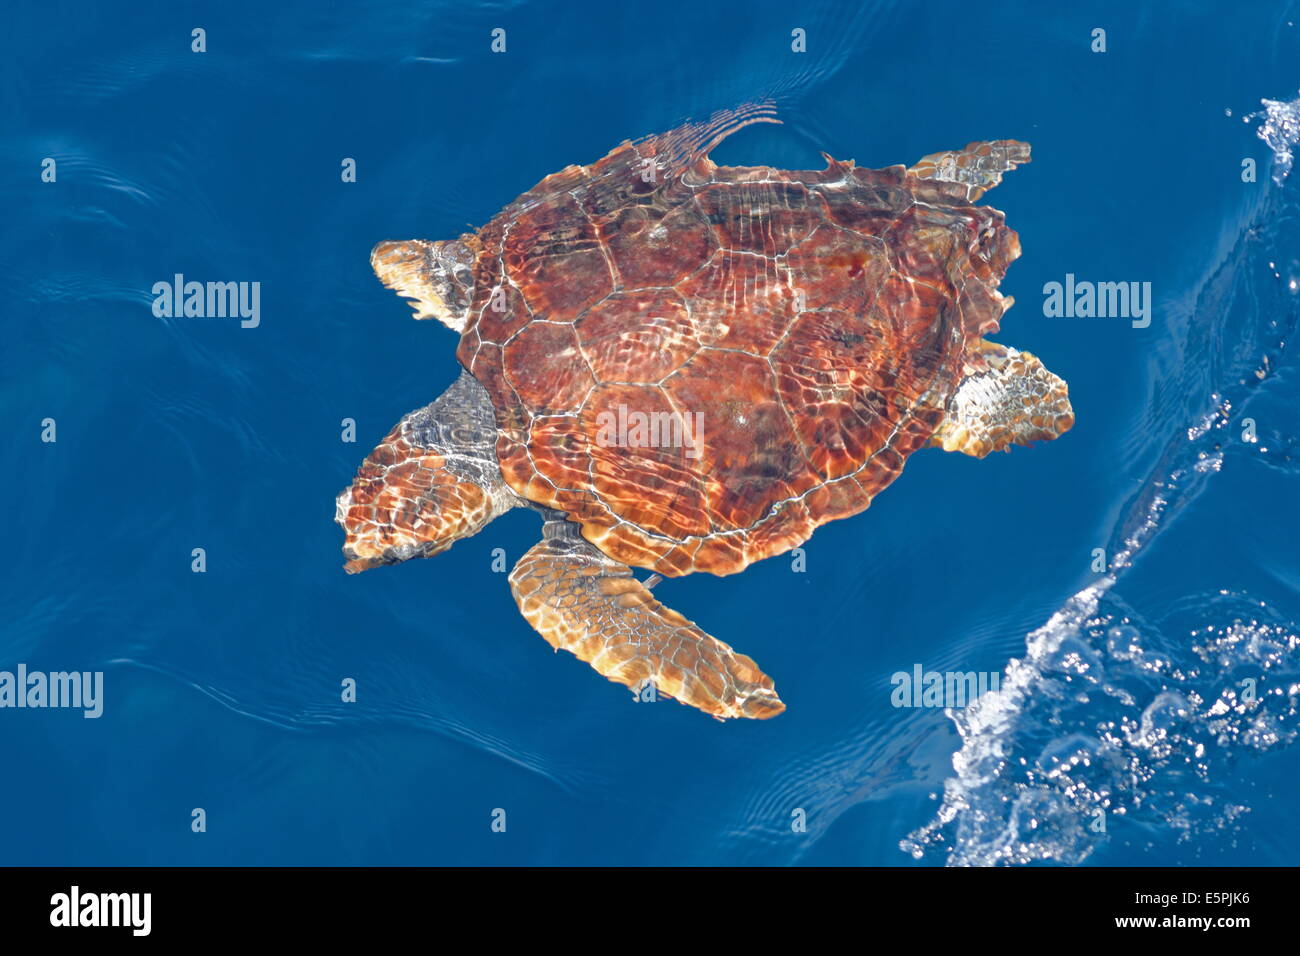 La tortue caouanne (Caretta caretta), océaniques, au-dessous de la surface en eau profonde, au large des côtes nord-est de l'Atlantique, Maroc Banque D'Images